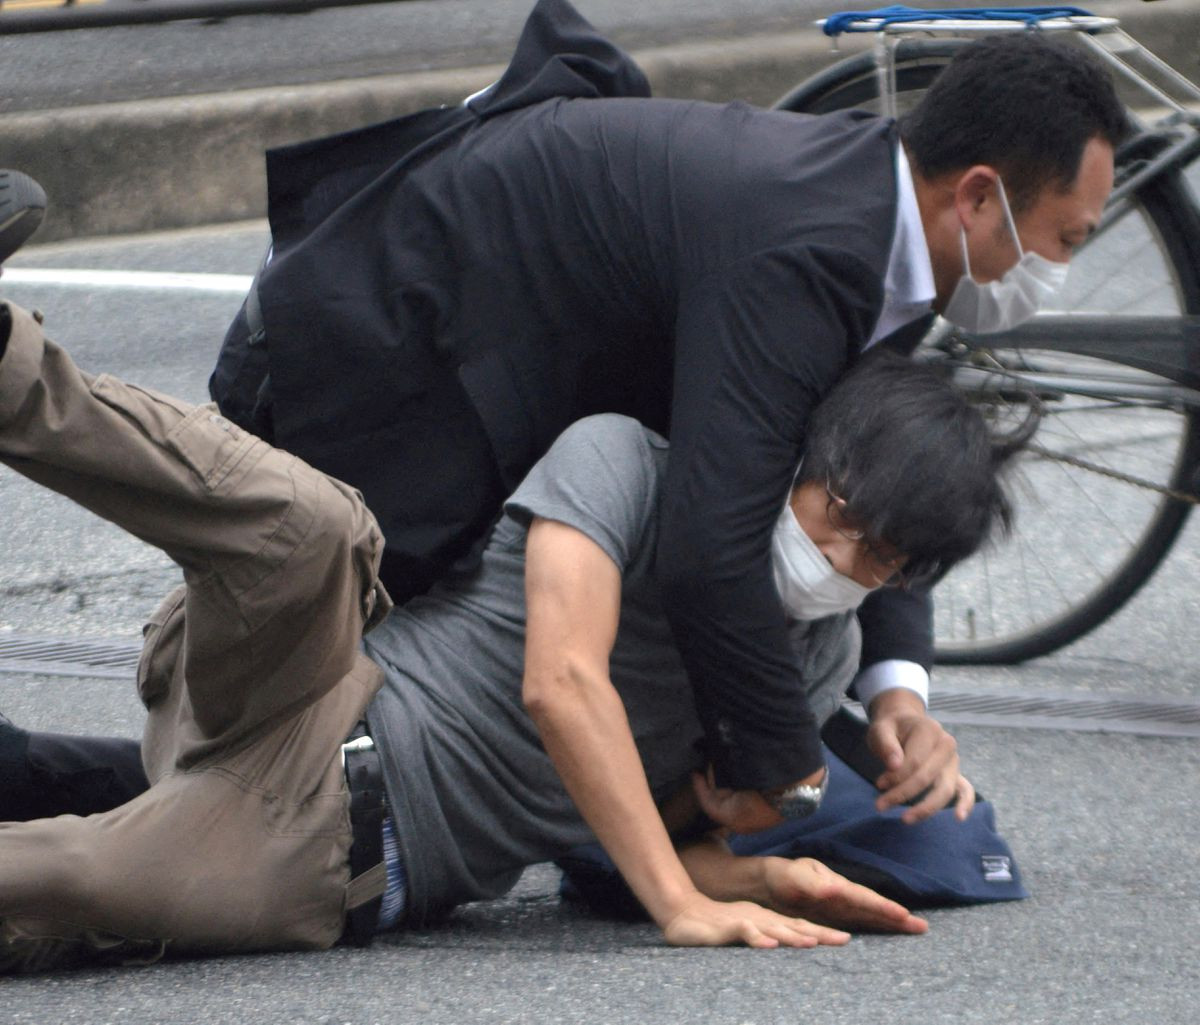 Update: Assassinated former Japan Prime Minister Shinzo Abe